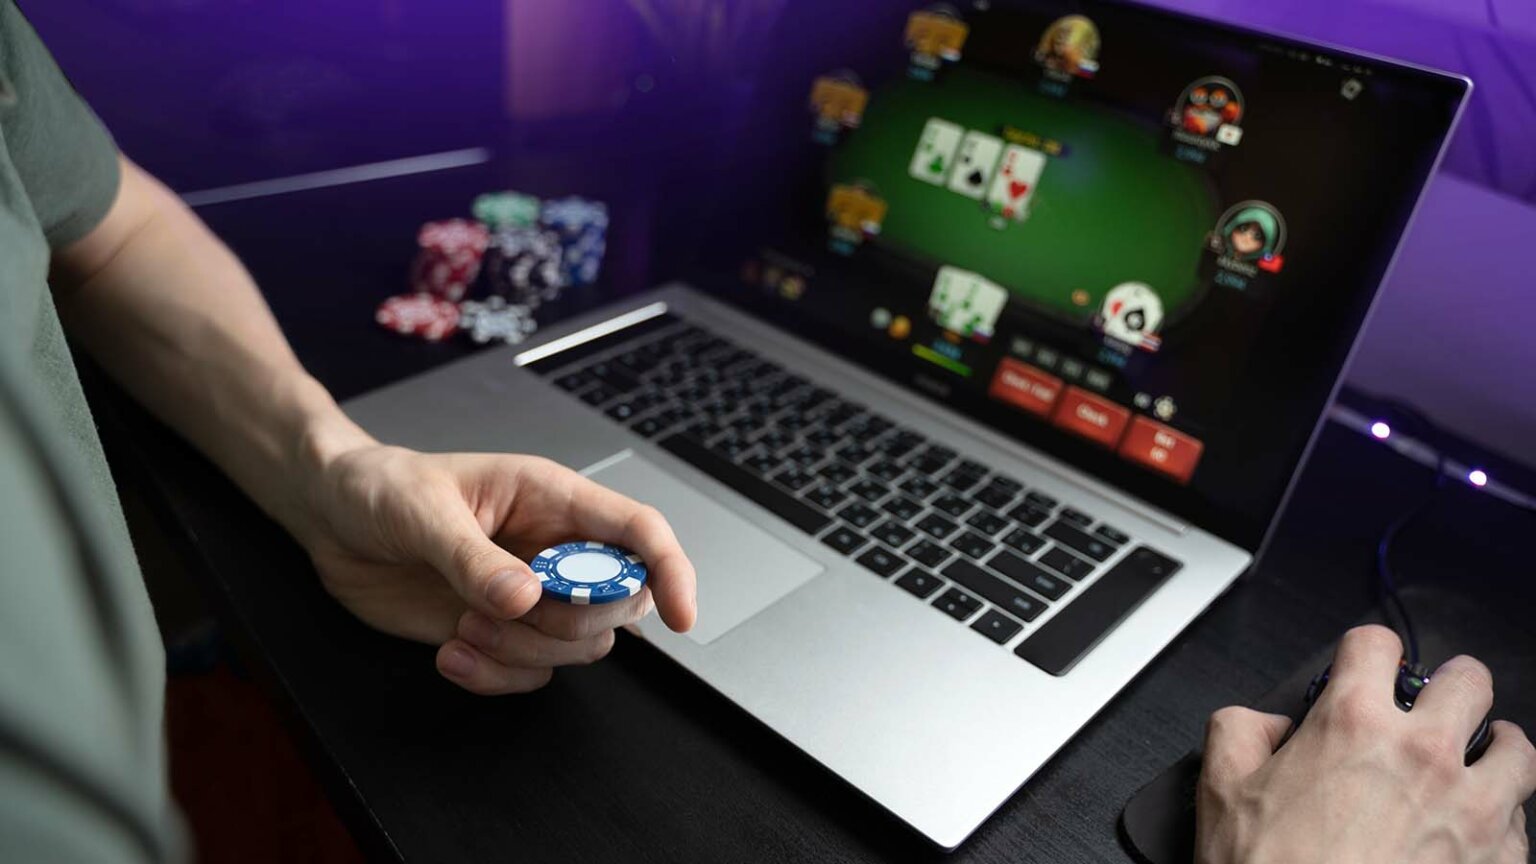 best nj casinos online